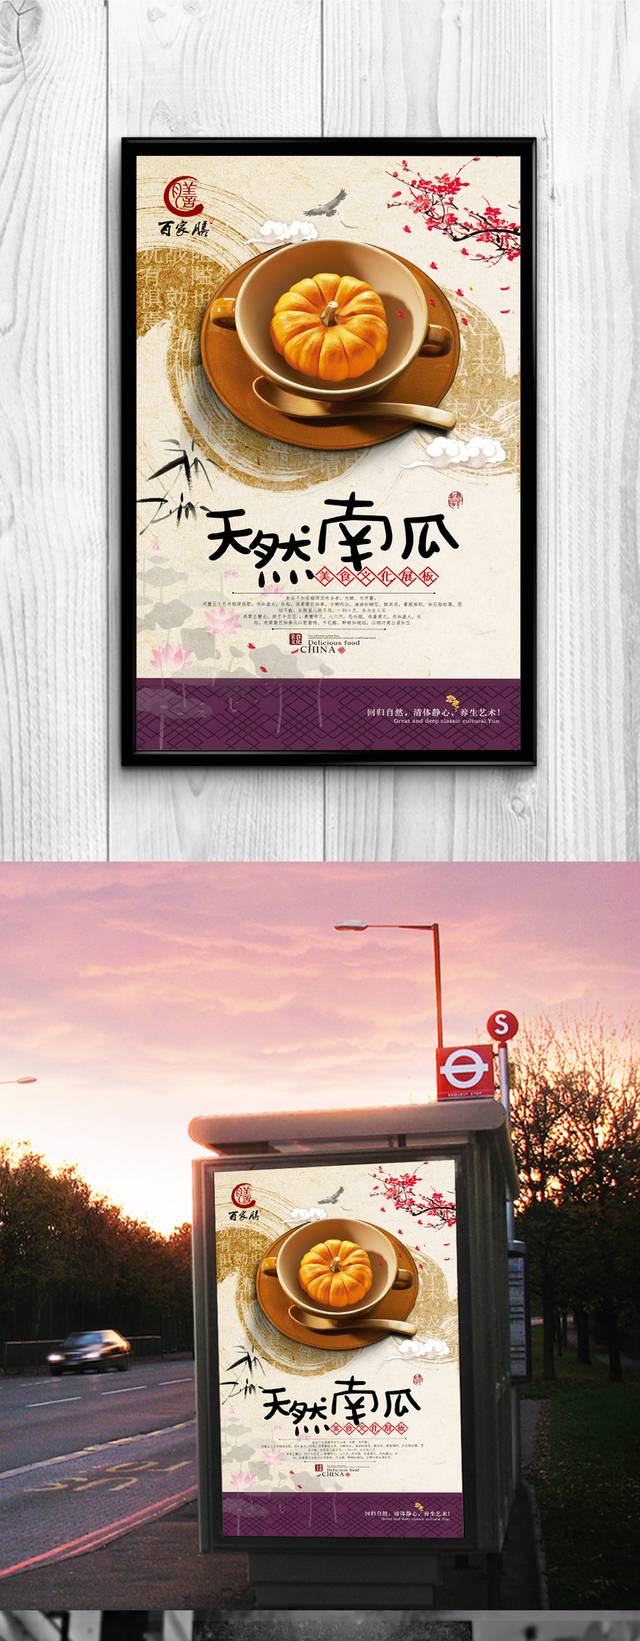 中国风高档南瓜宣传海报设计psd